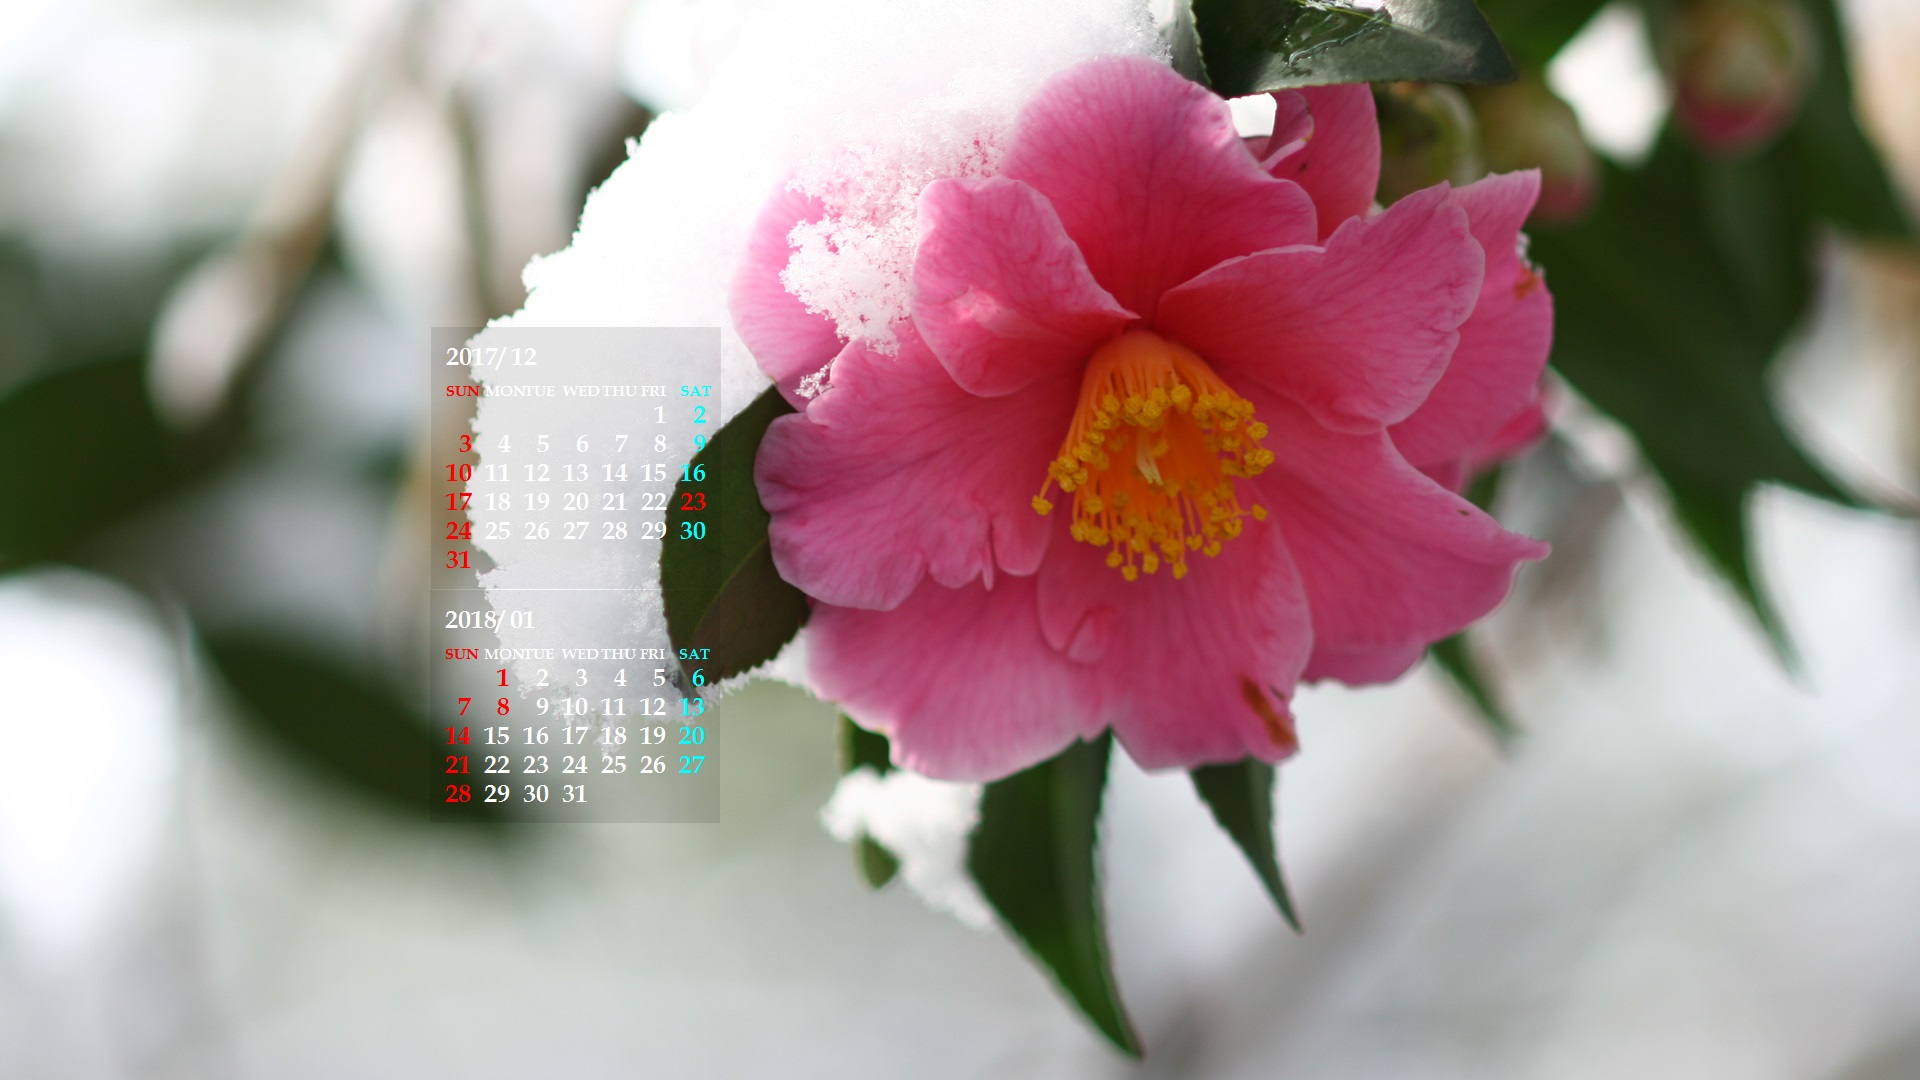 冬の花 カレンダー壁紙館 昴 無料ワイド